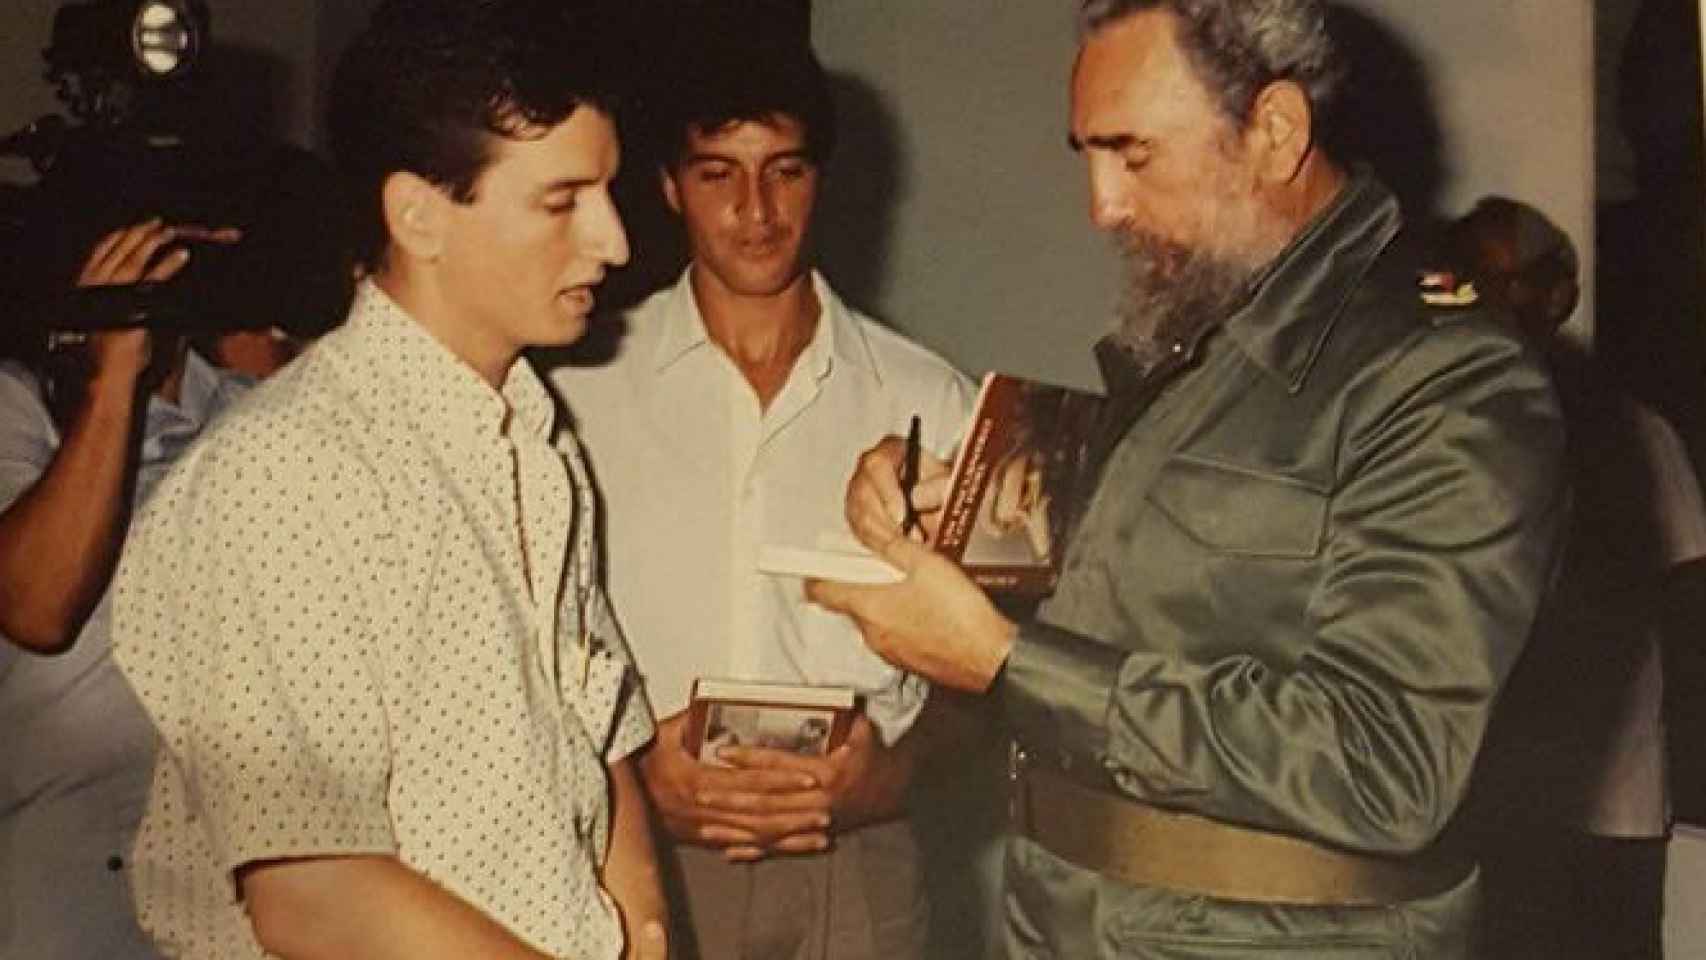 Uno de los vecinos que viajó a La Habana recibe regalos de Fidel Castro